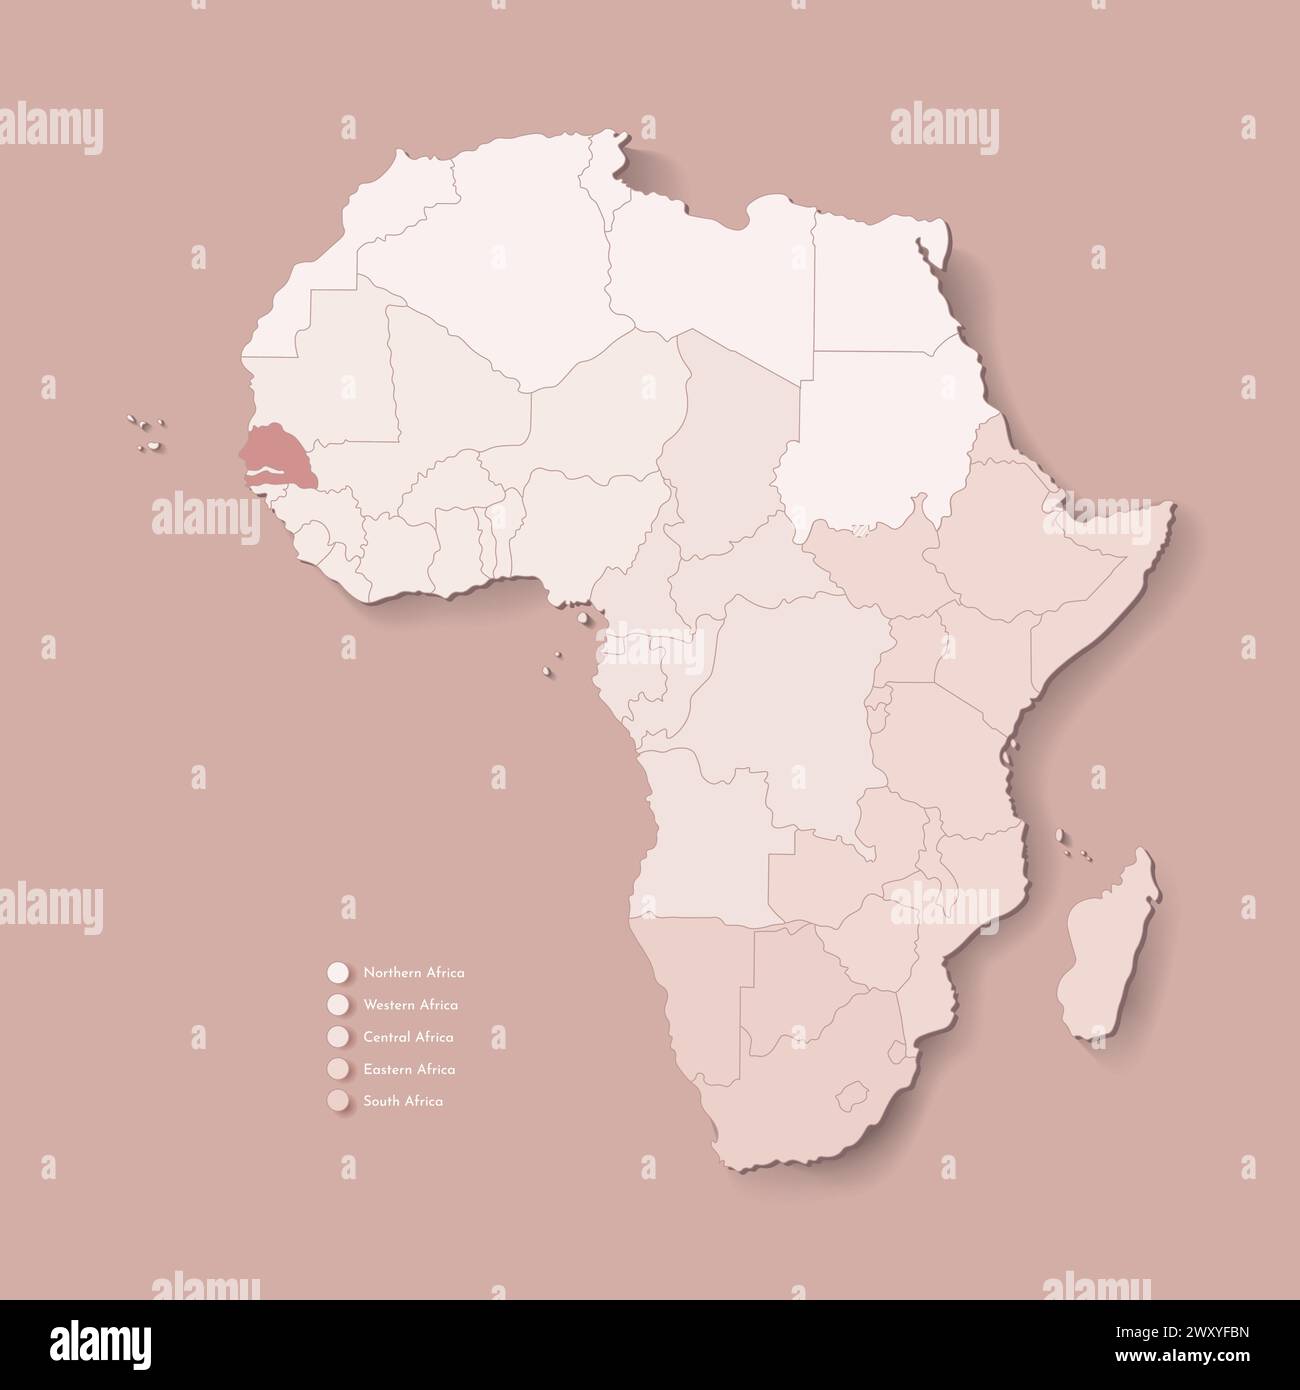 Illustrazione vettoriale con continente africano con confini di tutti gli stati e paese marcato Senegal. Mappa politica in colori marroni con occidentale, sud AN Illustrazione Vettoriale